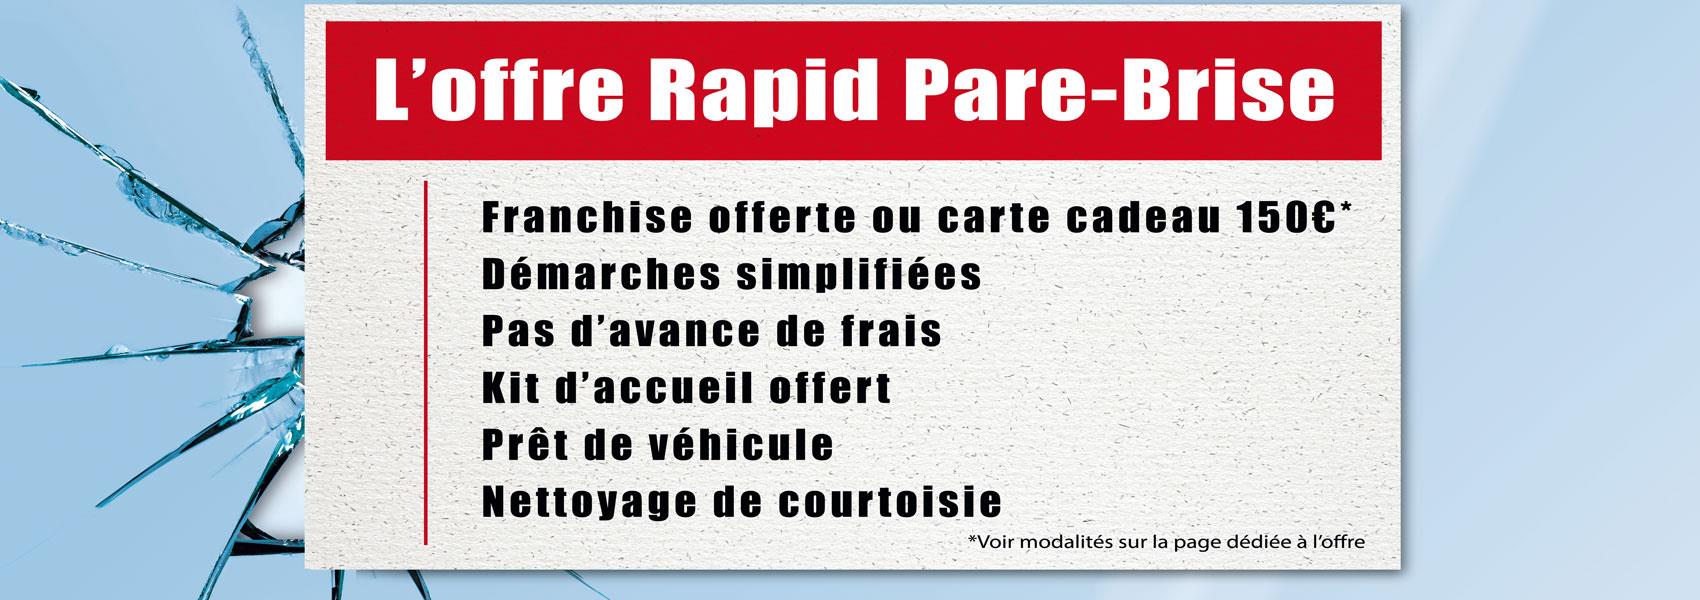 L' offre Rapid Pare-Brise : franchise offerte ou carte cadeau 150€